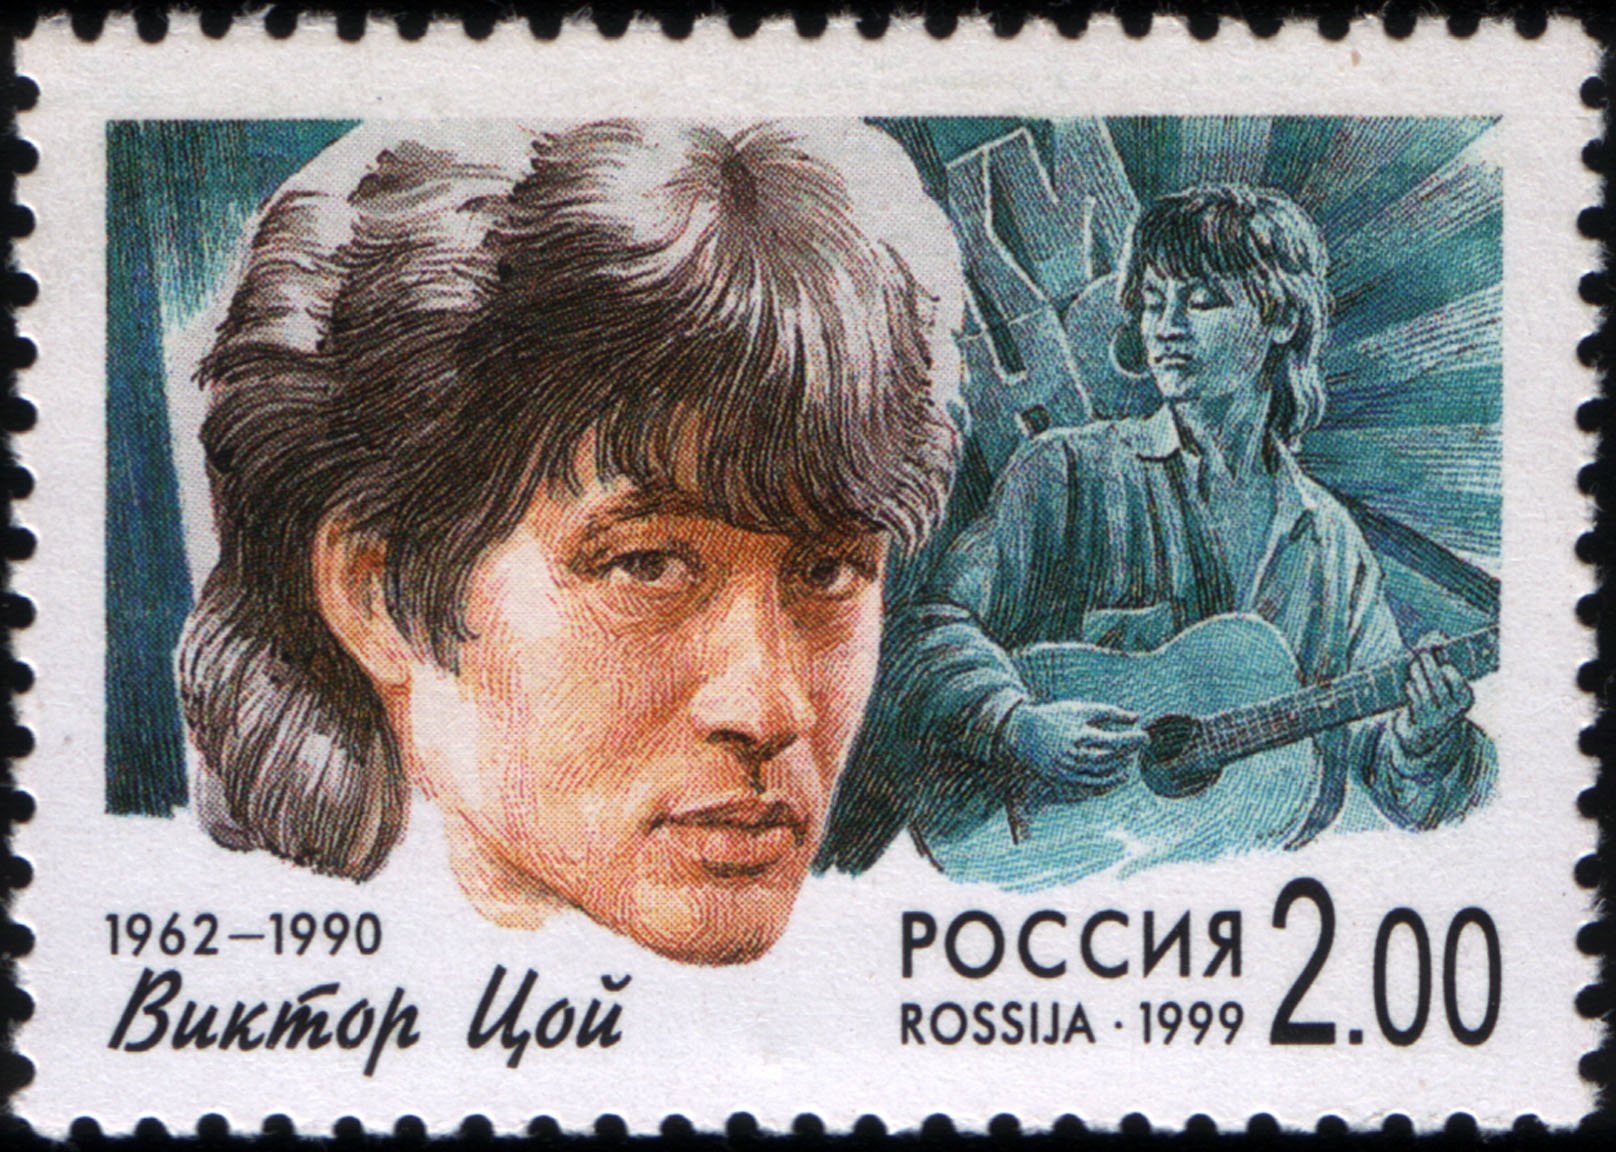 1544271537 russia stamp v tsoi 1999 2r